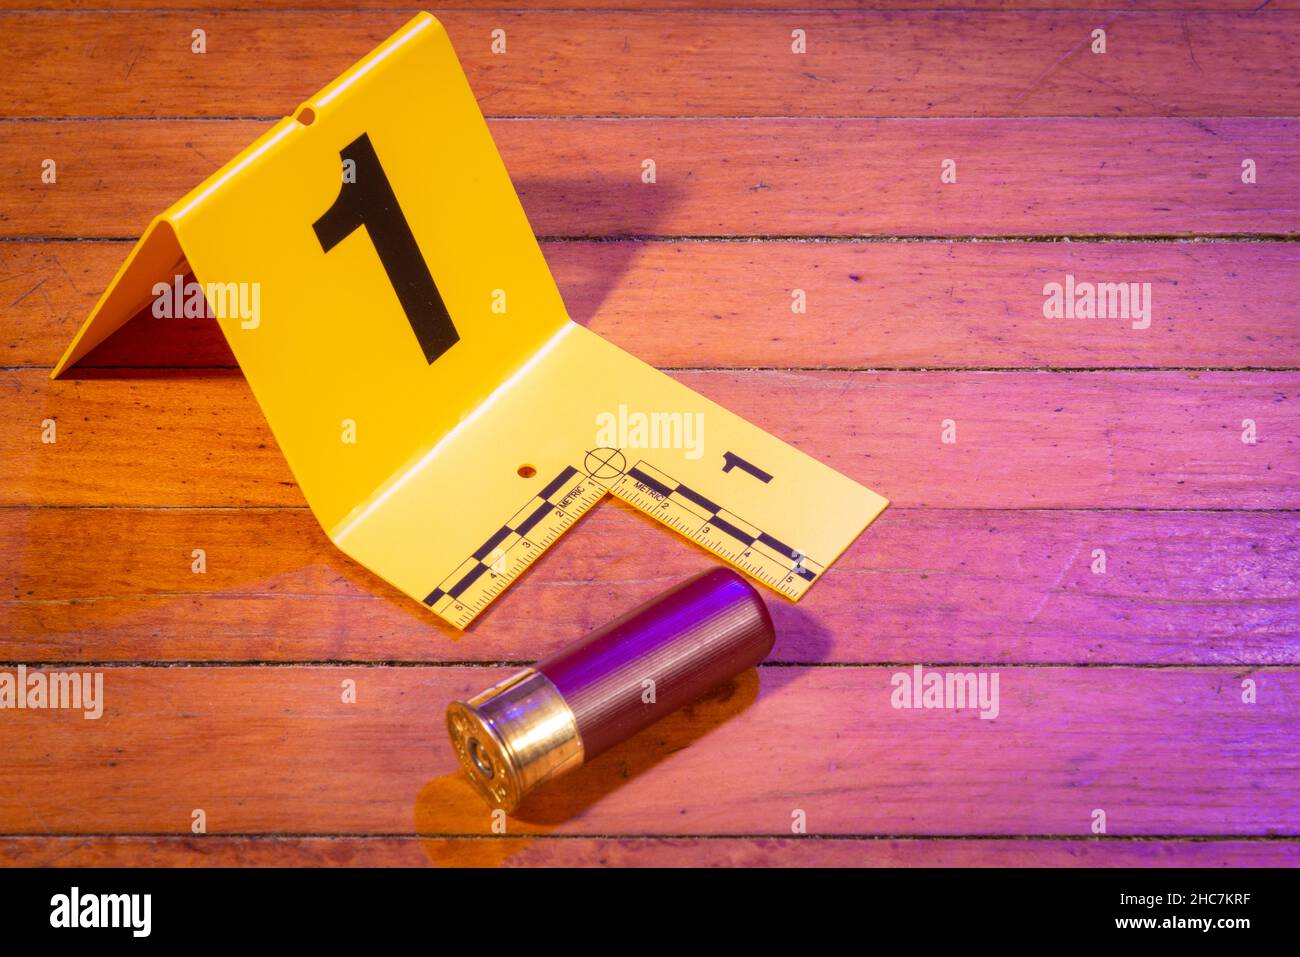 A 12 gauge shotgun shell sits on a wooden floor near an evidence marker. Stock Photo